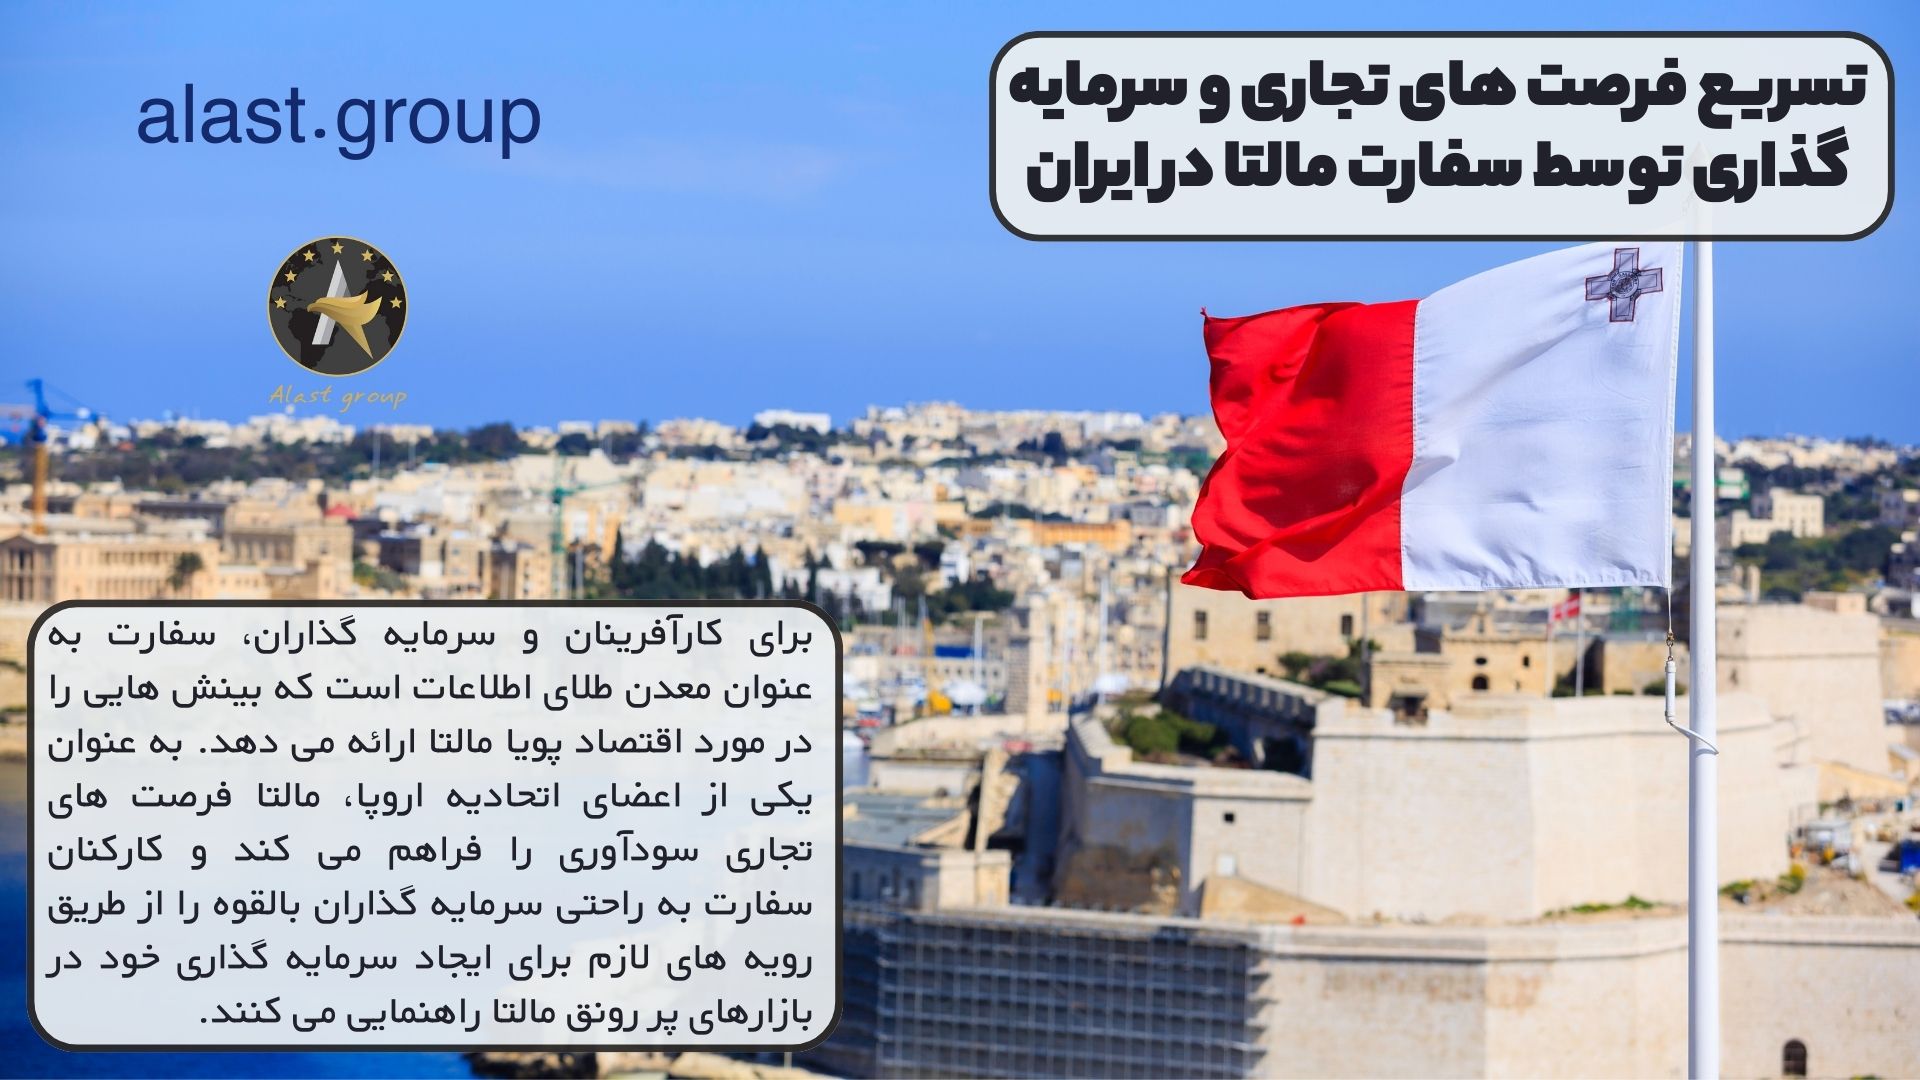 تسریع فرصت های تجاری و سرمایه گذاری توسط سفارت مالتا در ایران